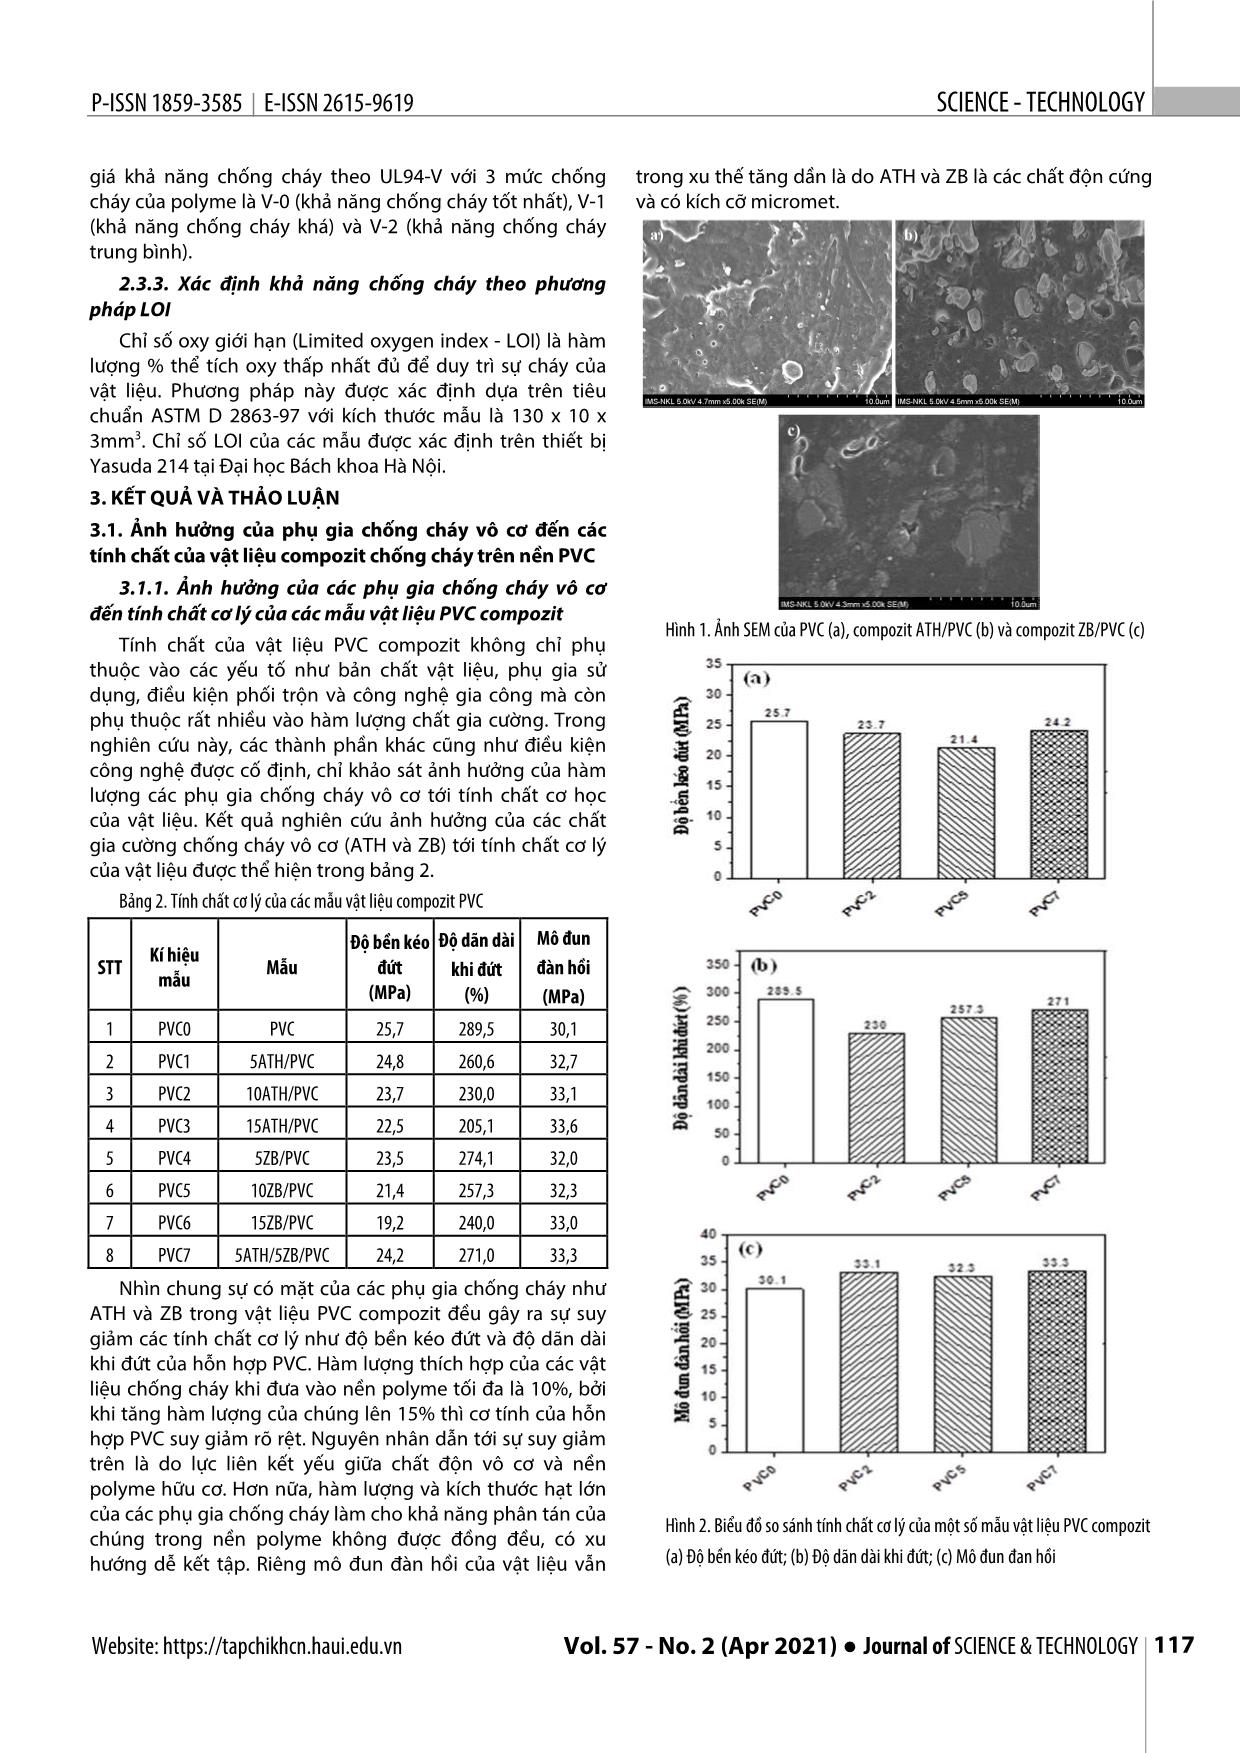 Chế tạo và đánh giá tính chất của vật liệu Nanocompozit chống cháy trên nền Polyvinyl Clorua trang 3